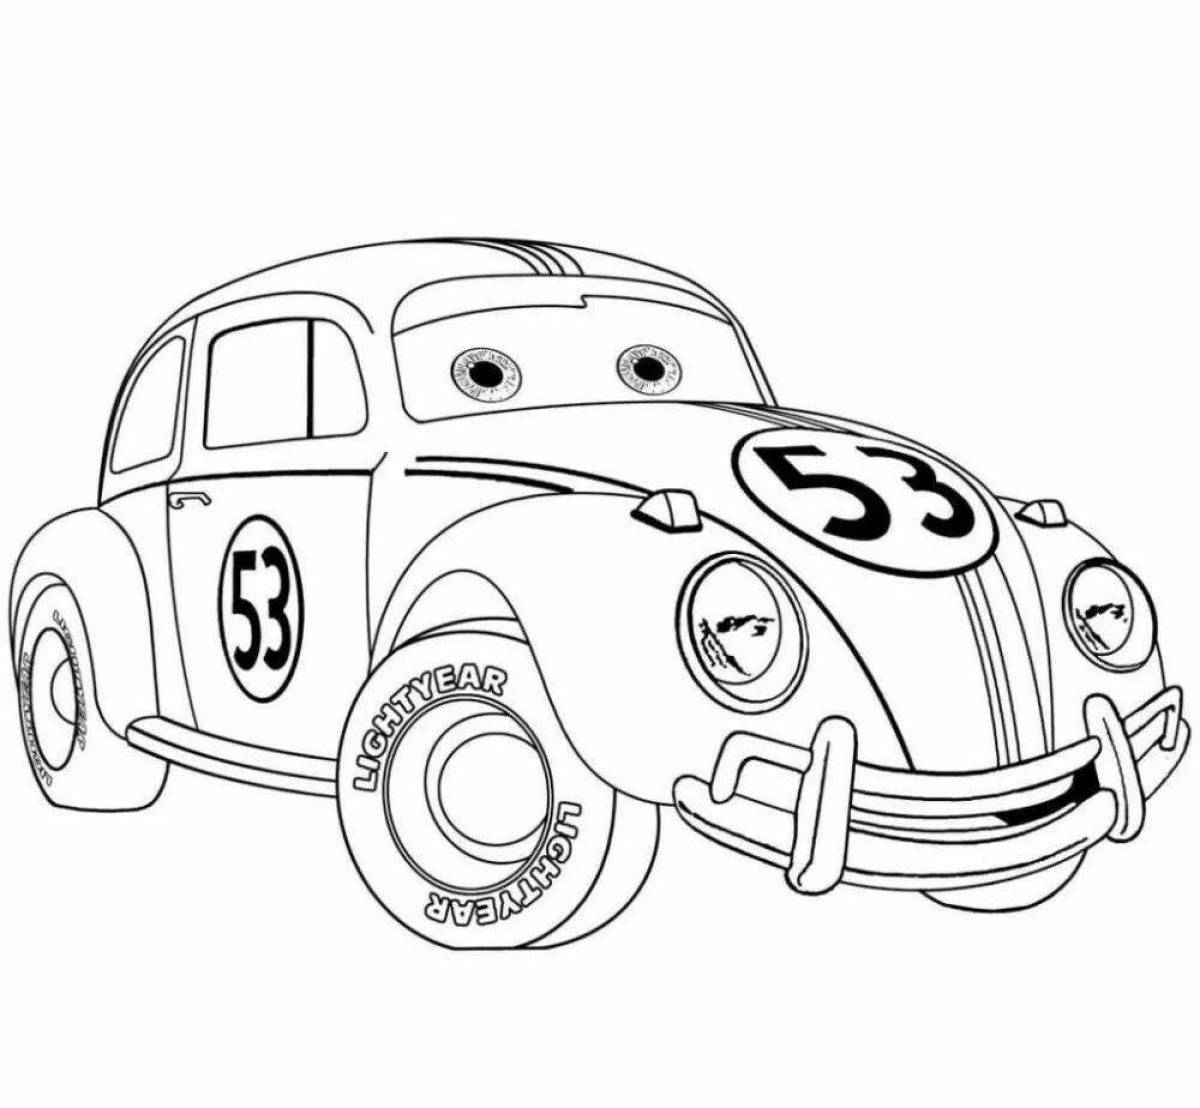 Amazing cartoon cars for boys